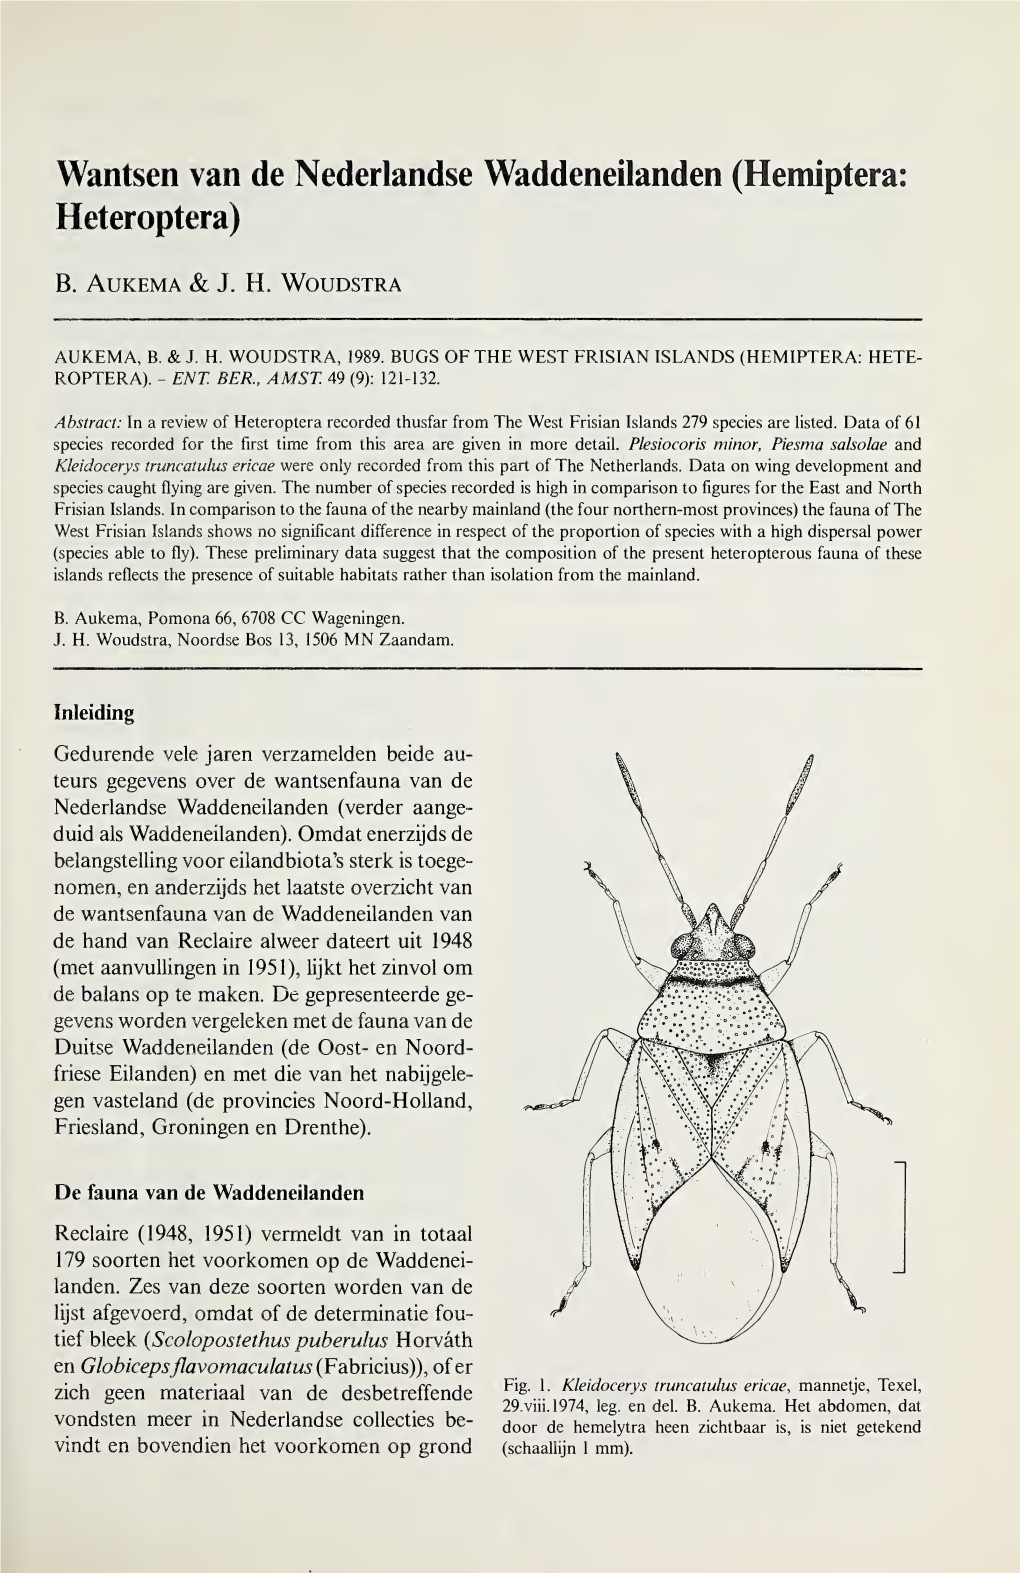 Hemiptera: Heteroptera)